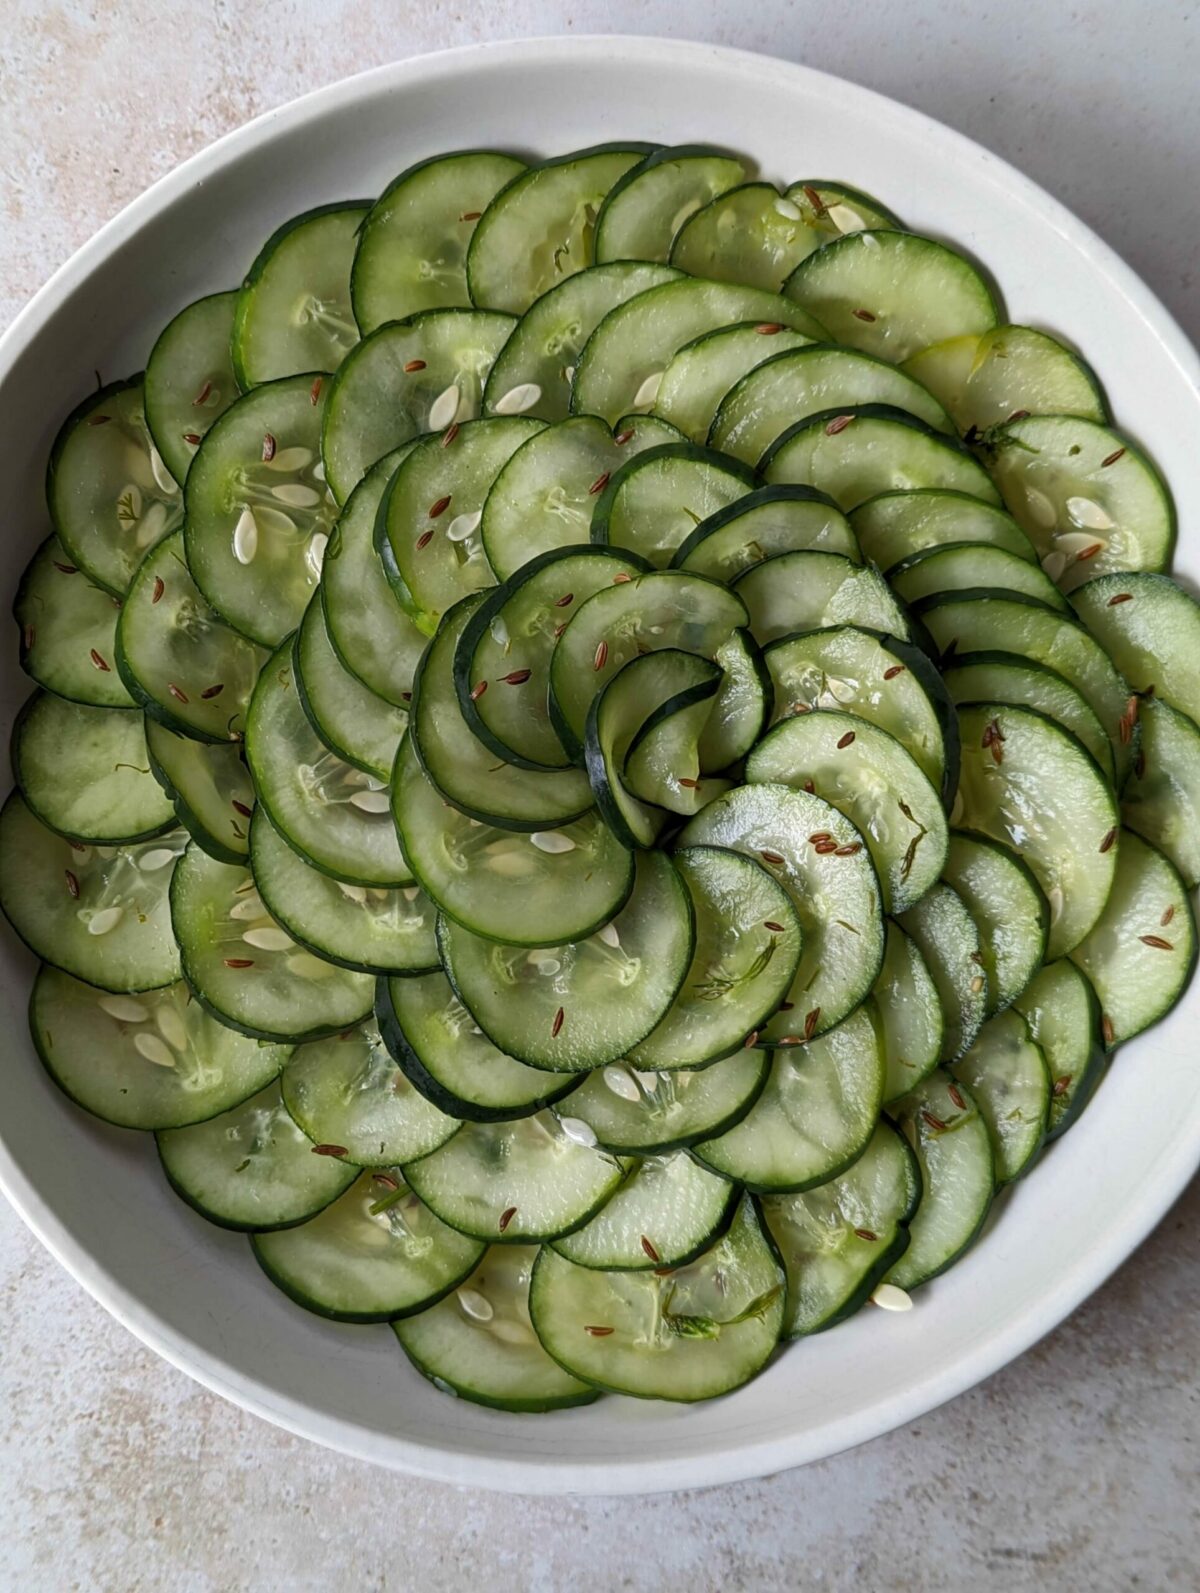 Pressgurka (Pressed Swedish Cucumber Salad)